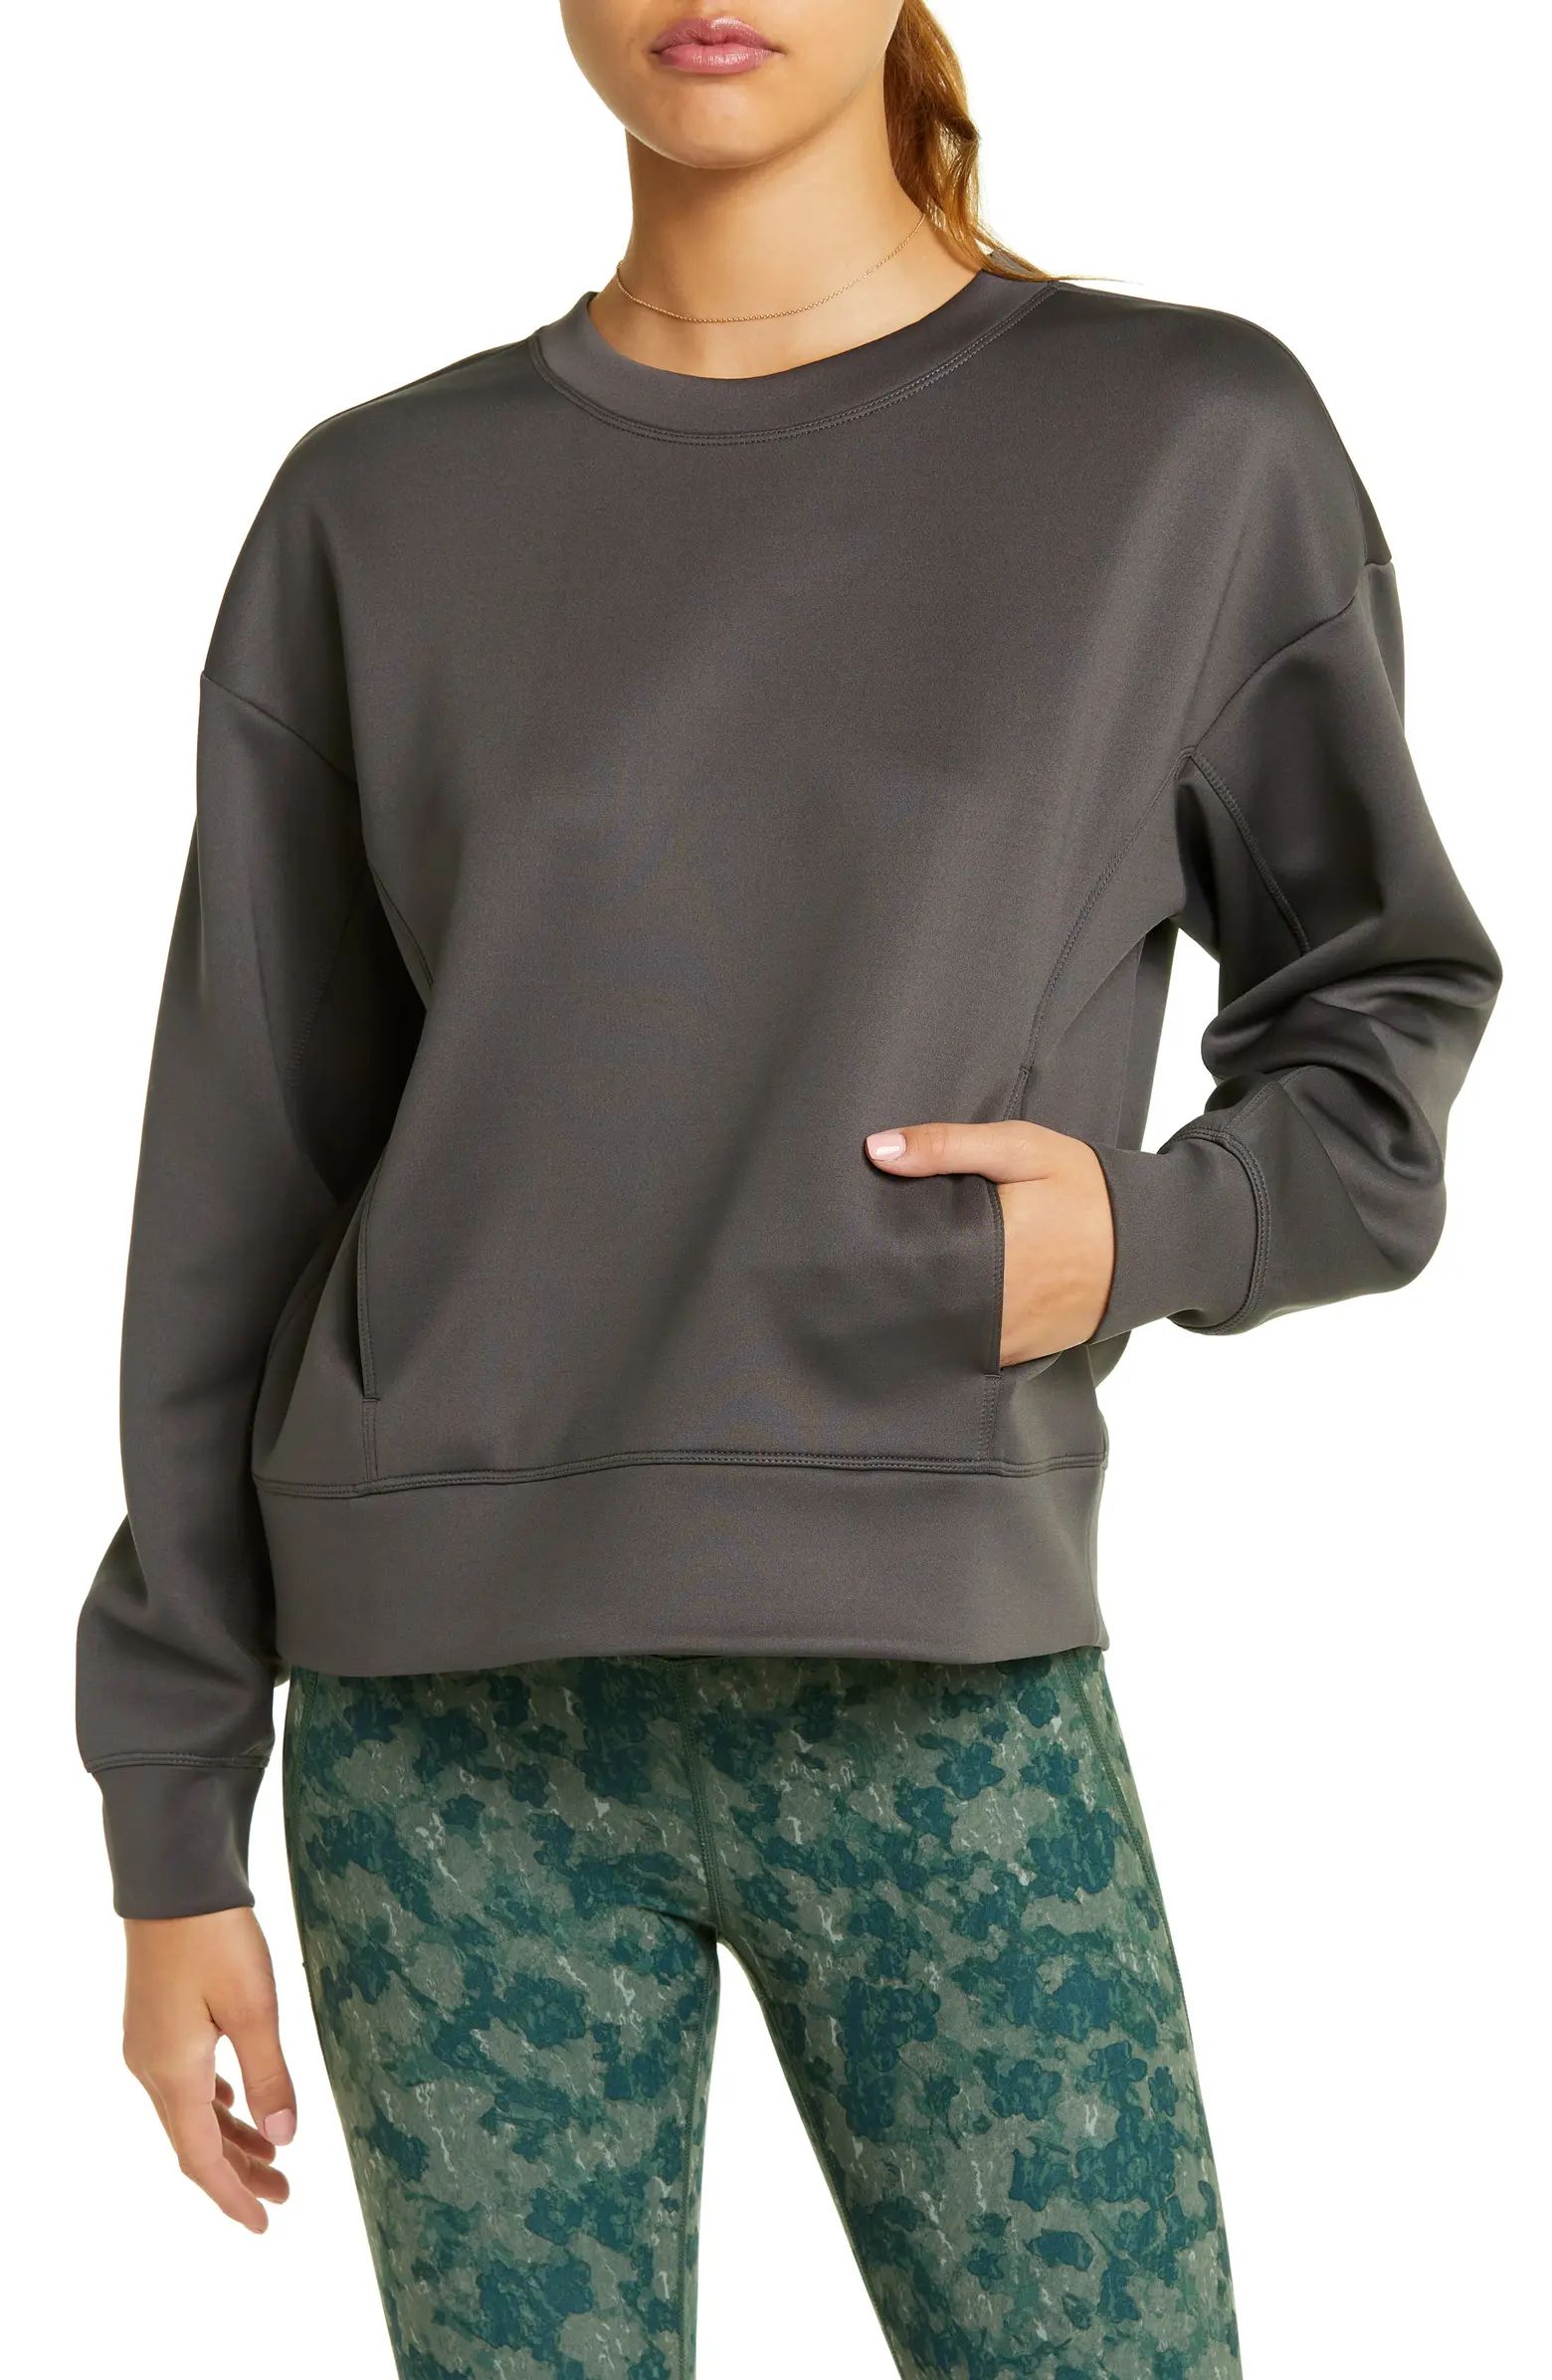 Luxe Pocket Sweatshirt | Nordstrom